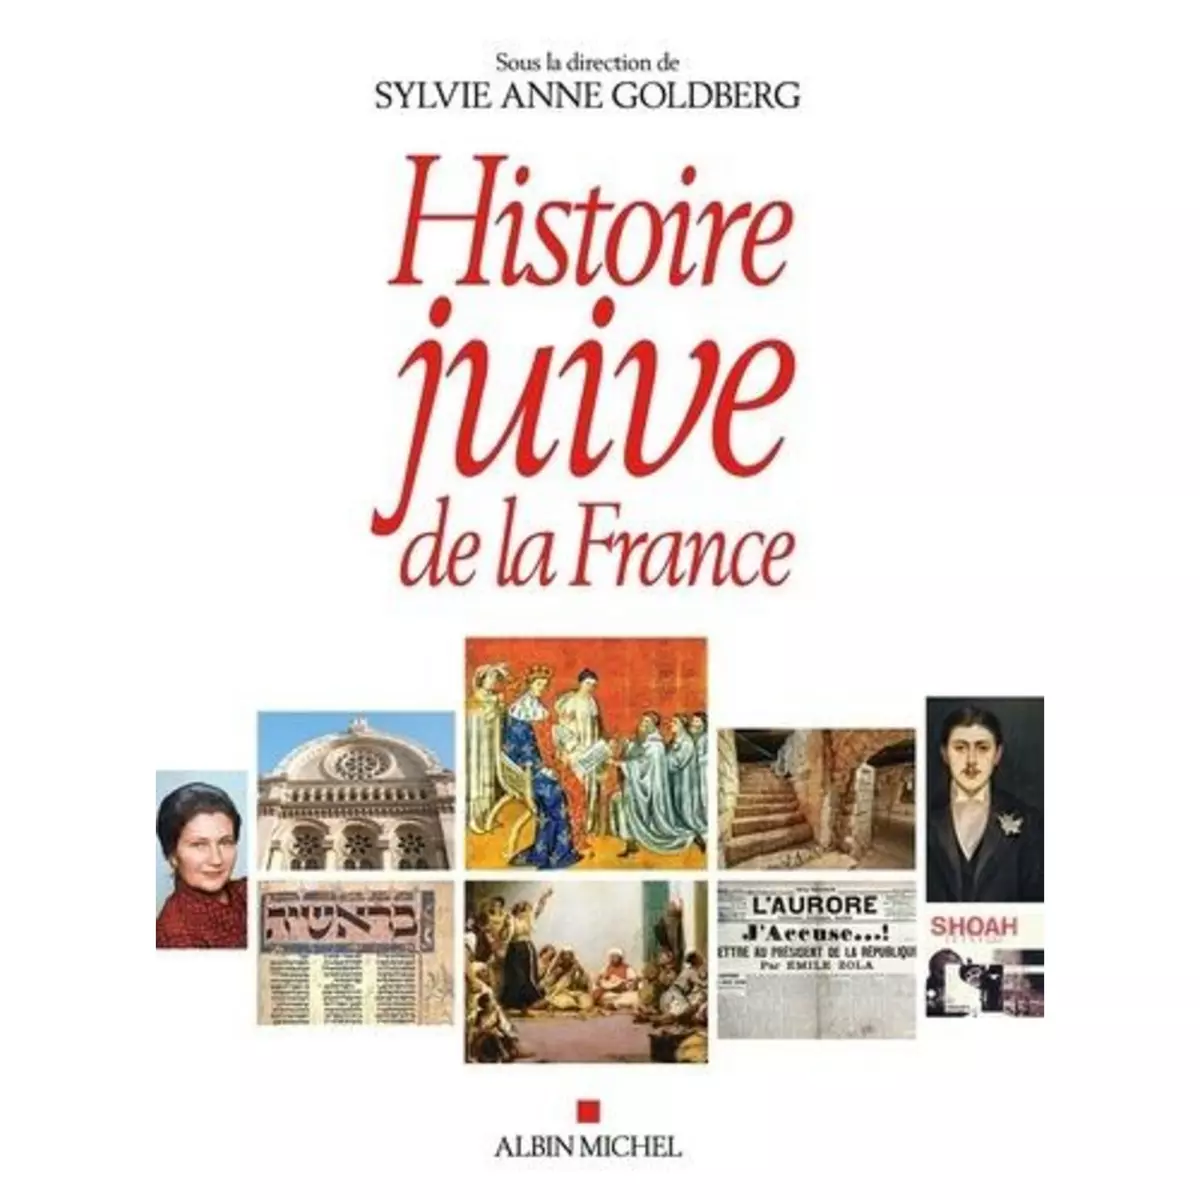  HISTOIRE JUIVE DE LA FRANCE, Goldberg Sylvie Anne